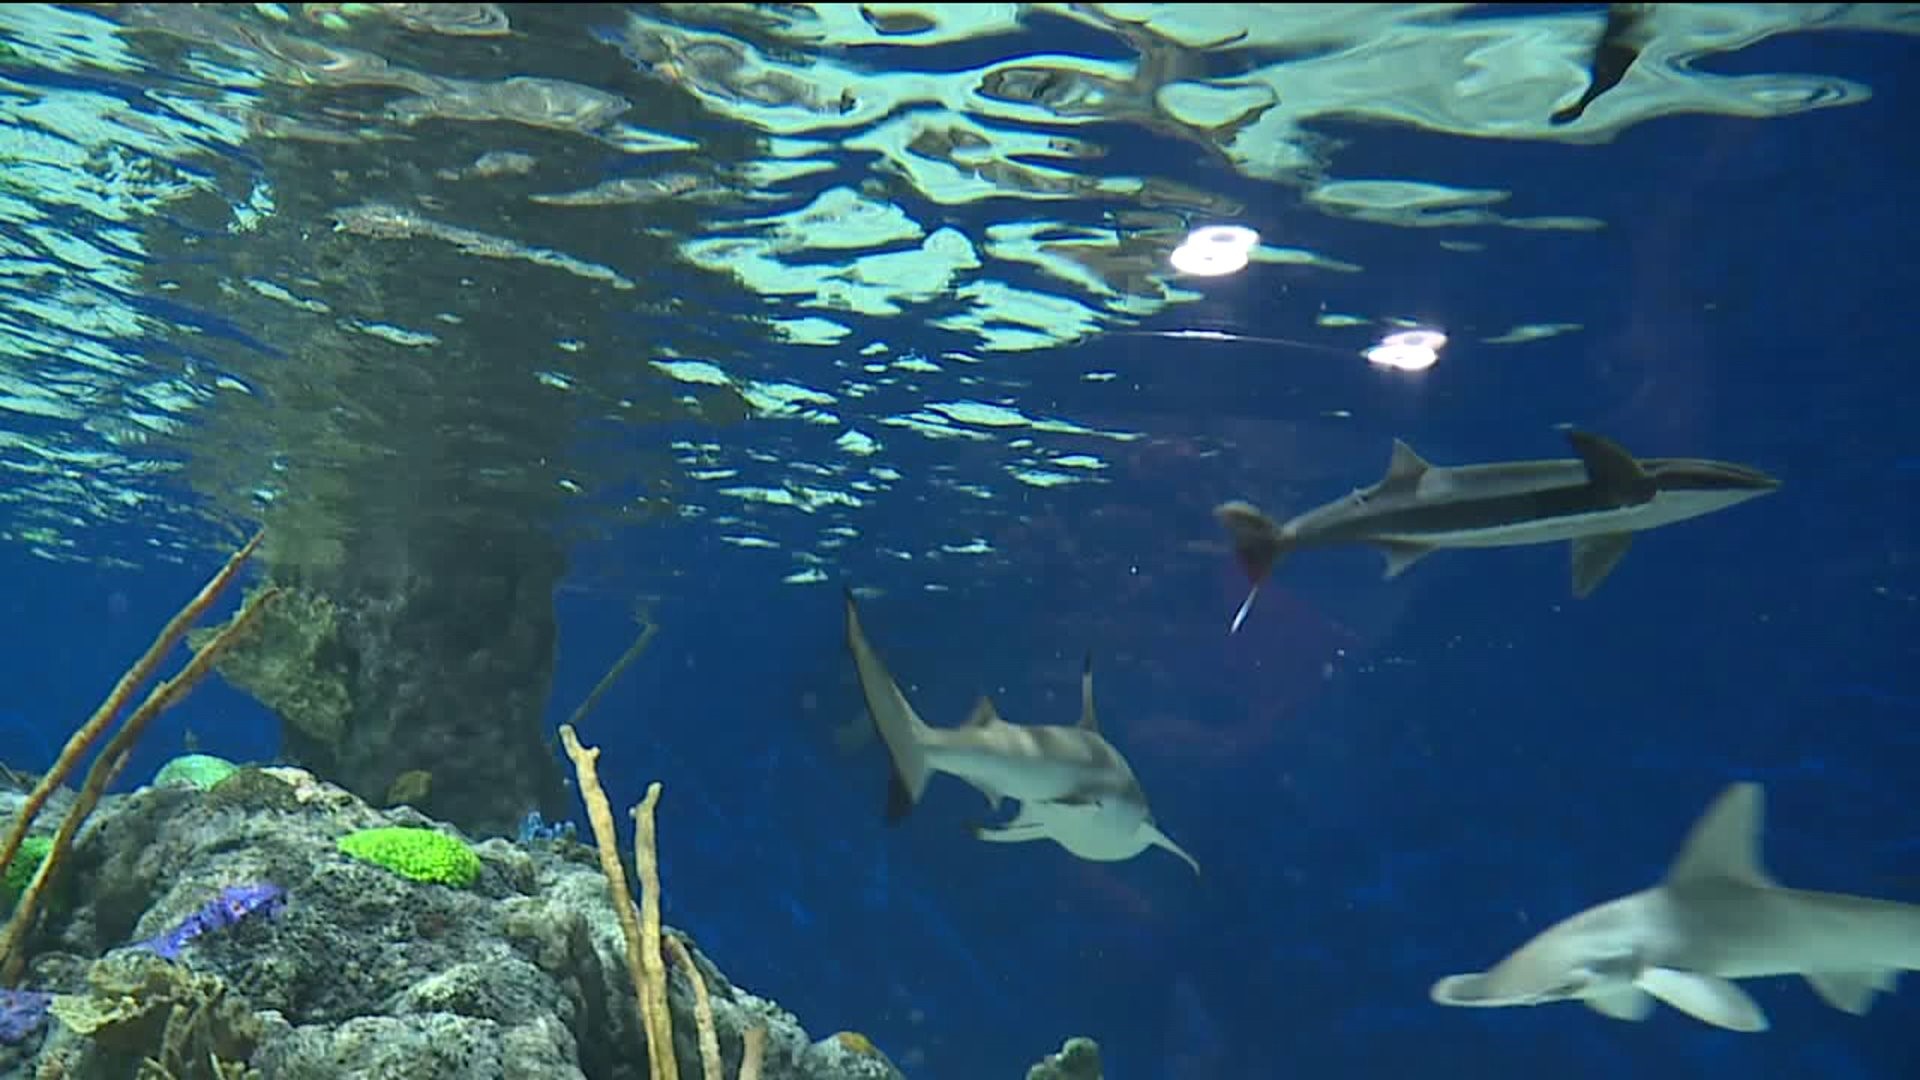 New Aquarium Opens in Scranton